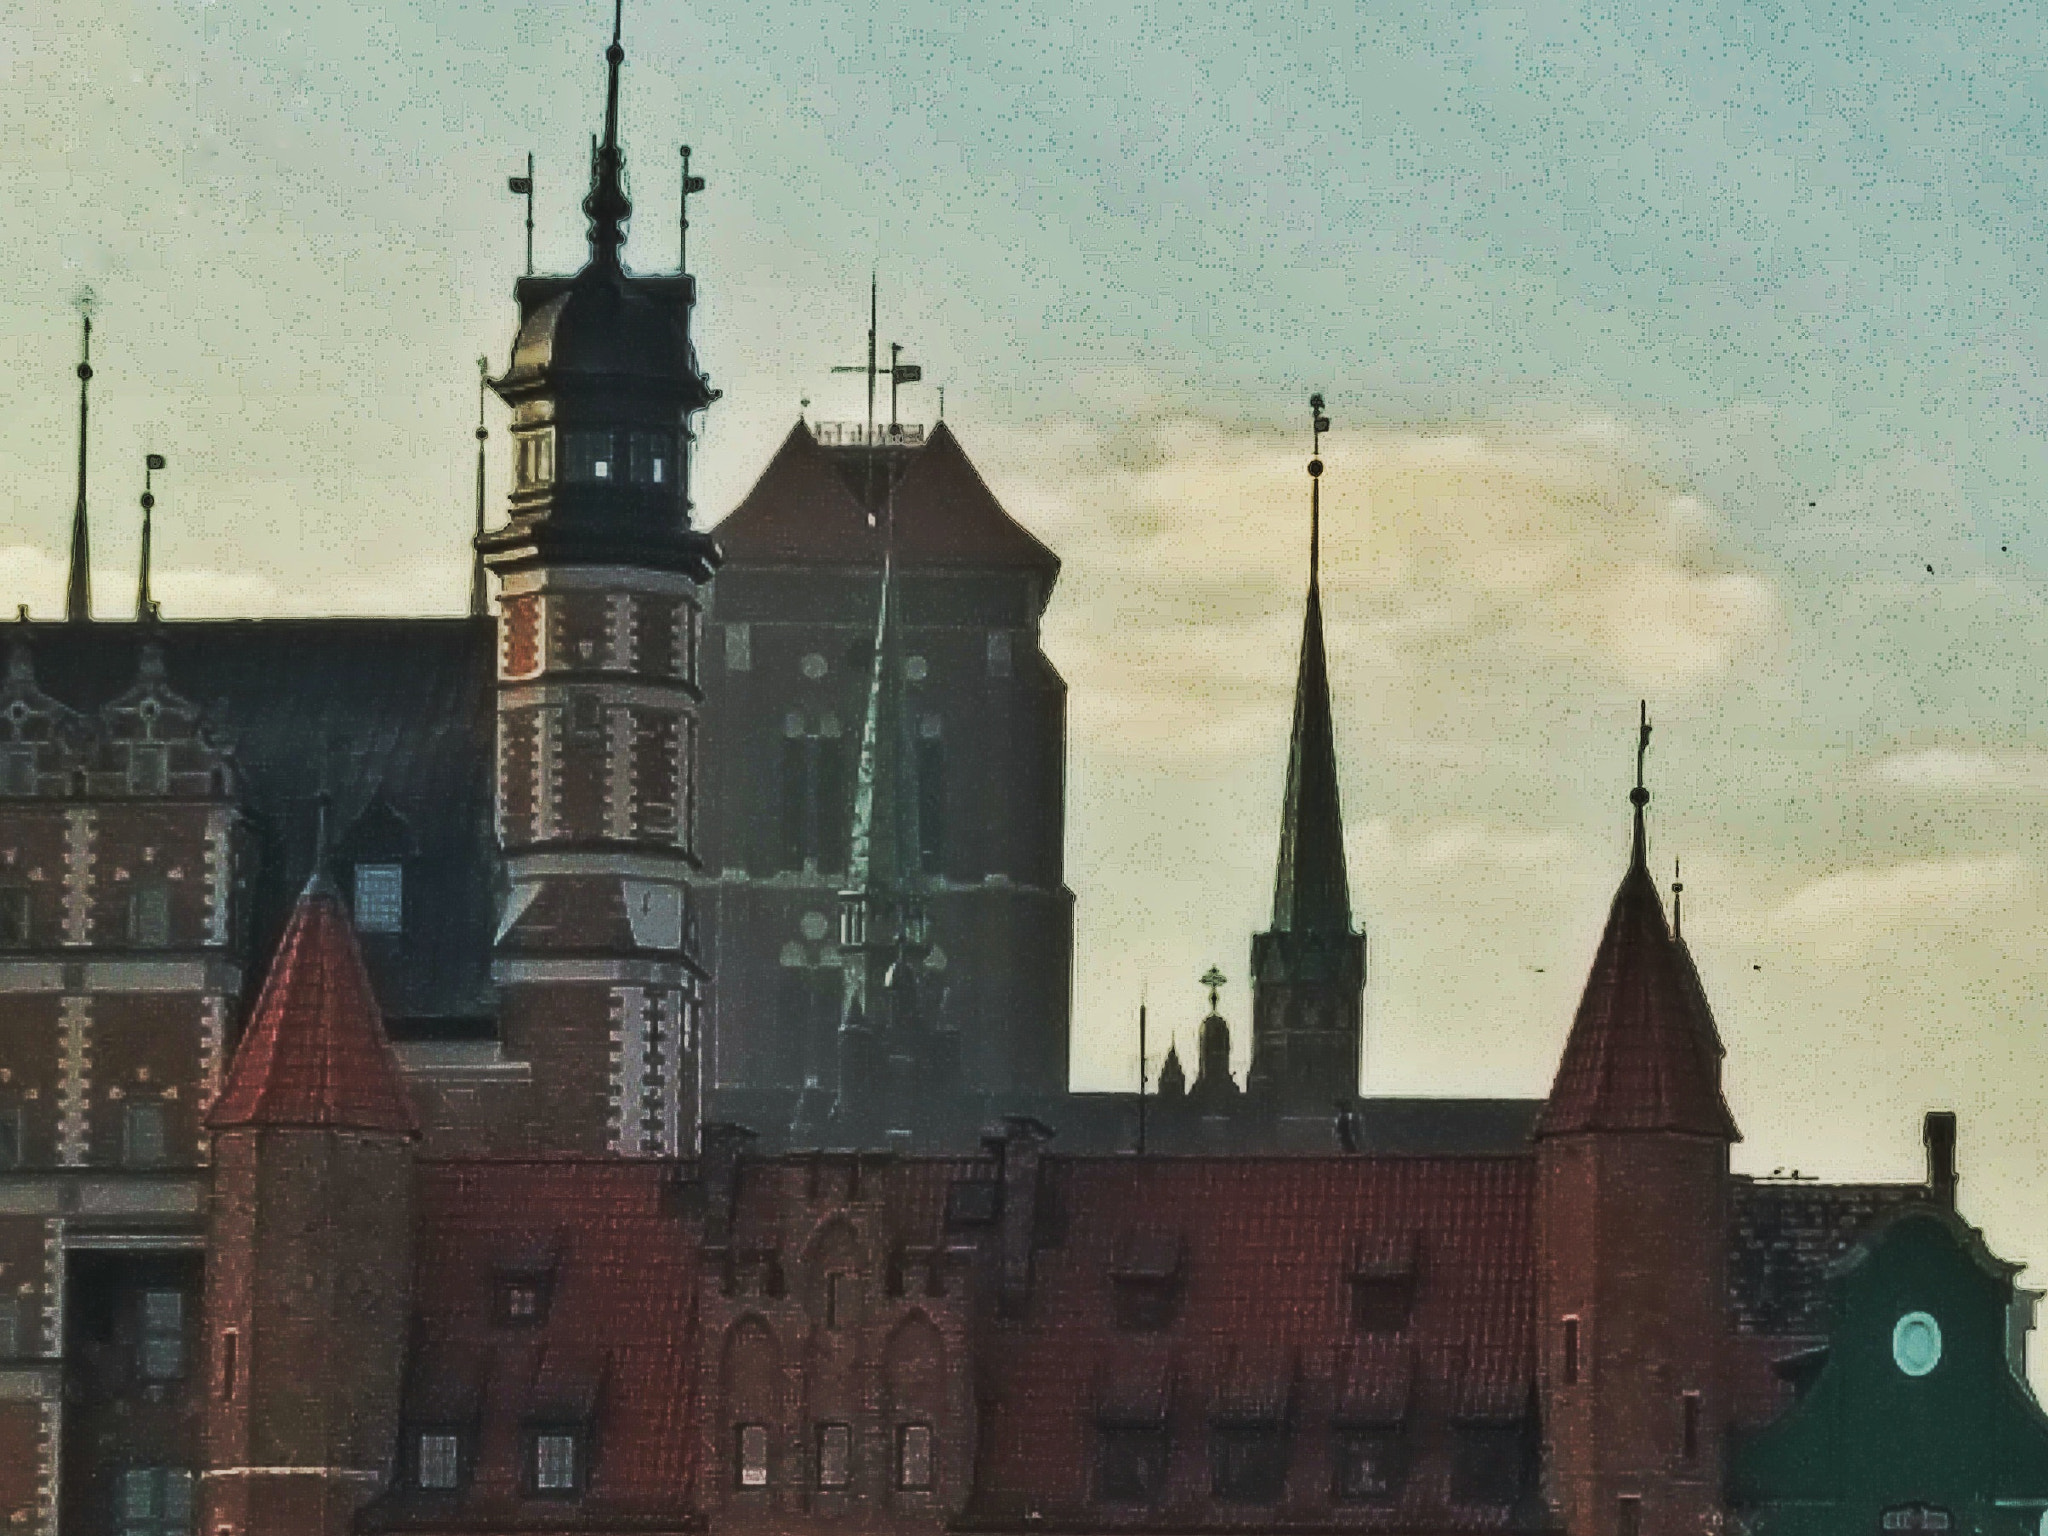 HTC M10 sample photo. Gdansk photography